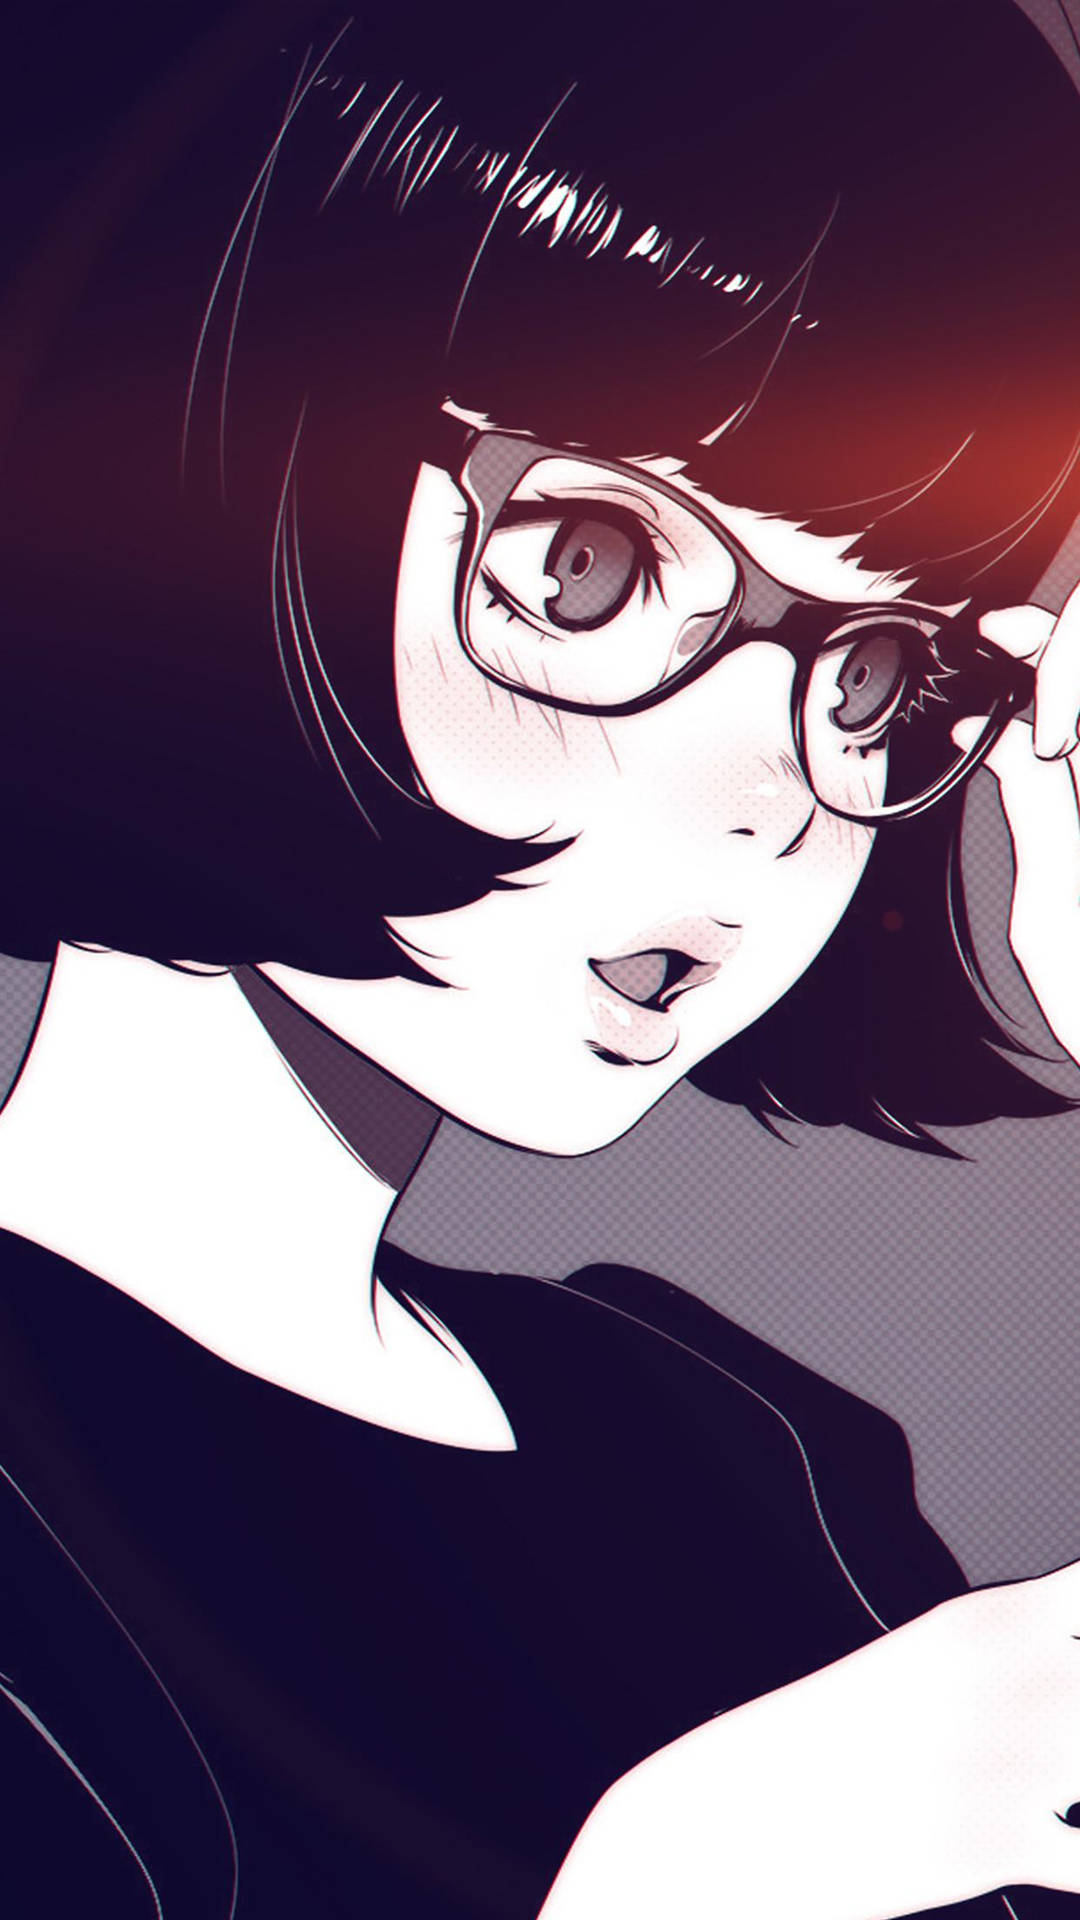 Aesthetic Anime Girl With Eyeglasses